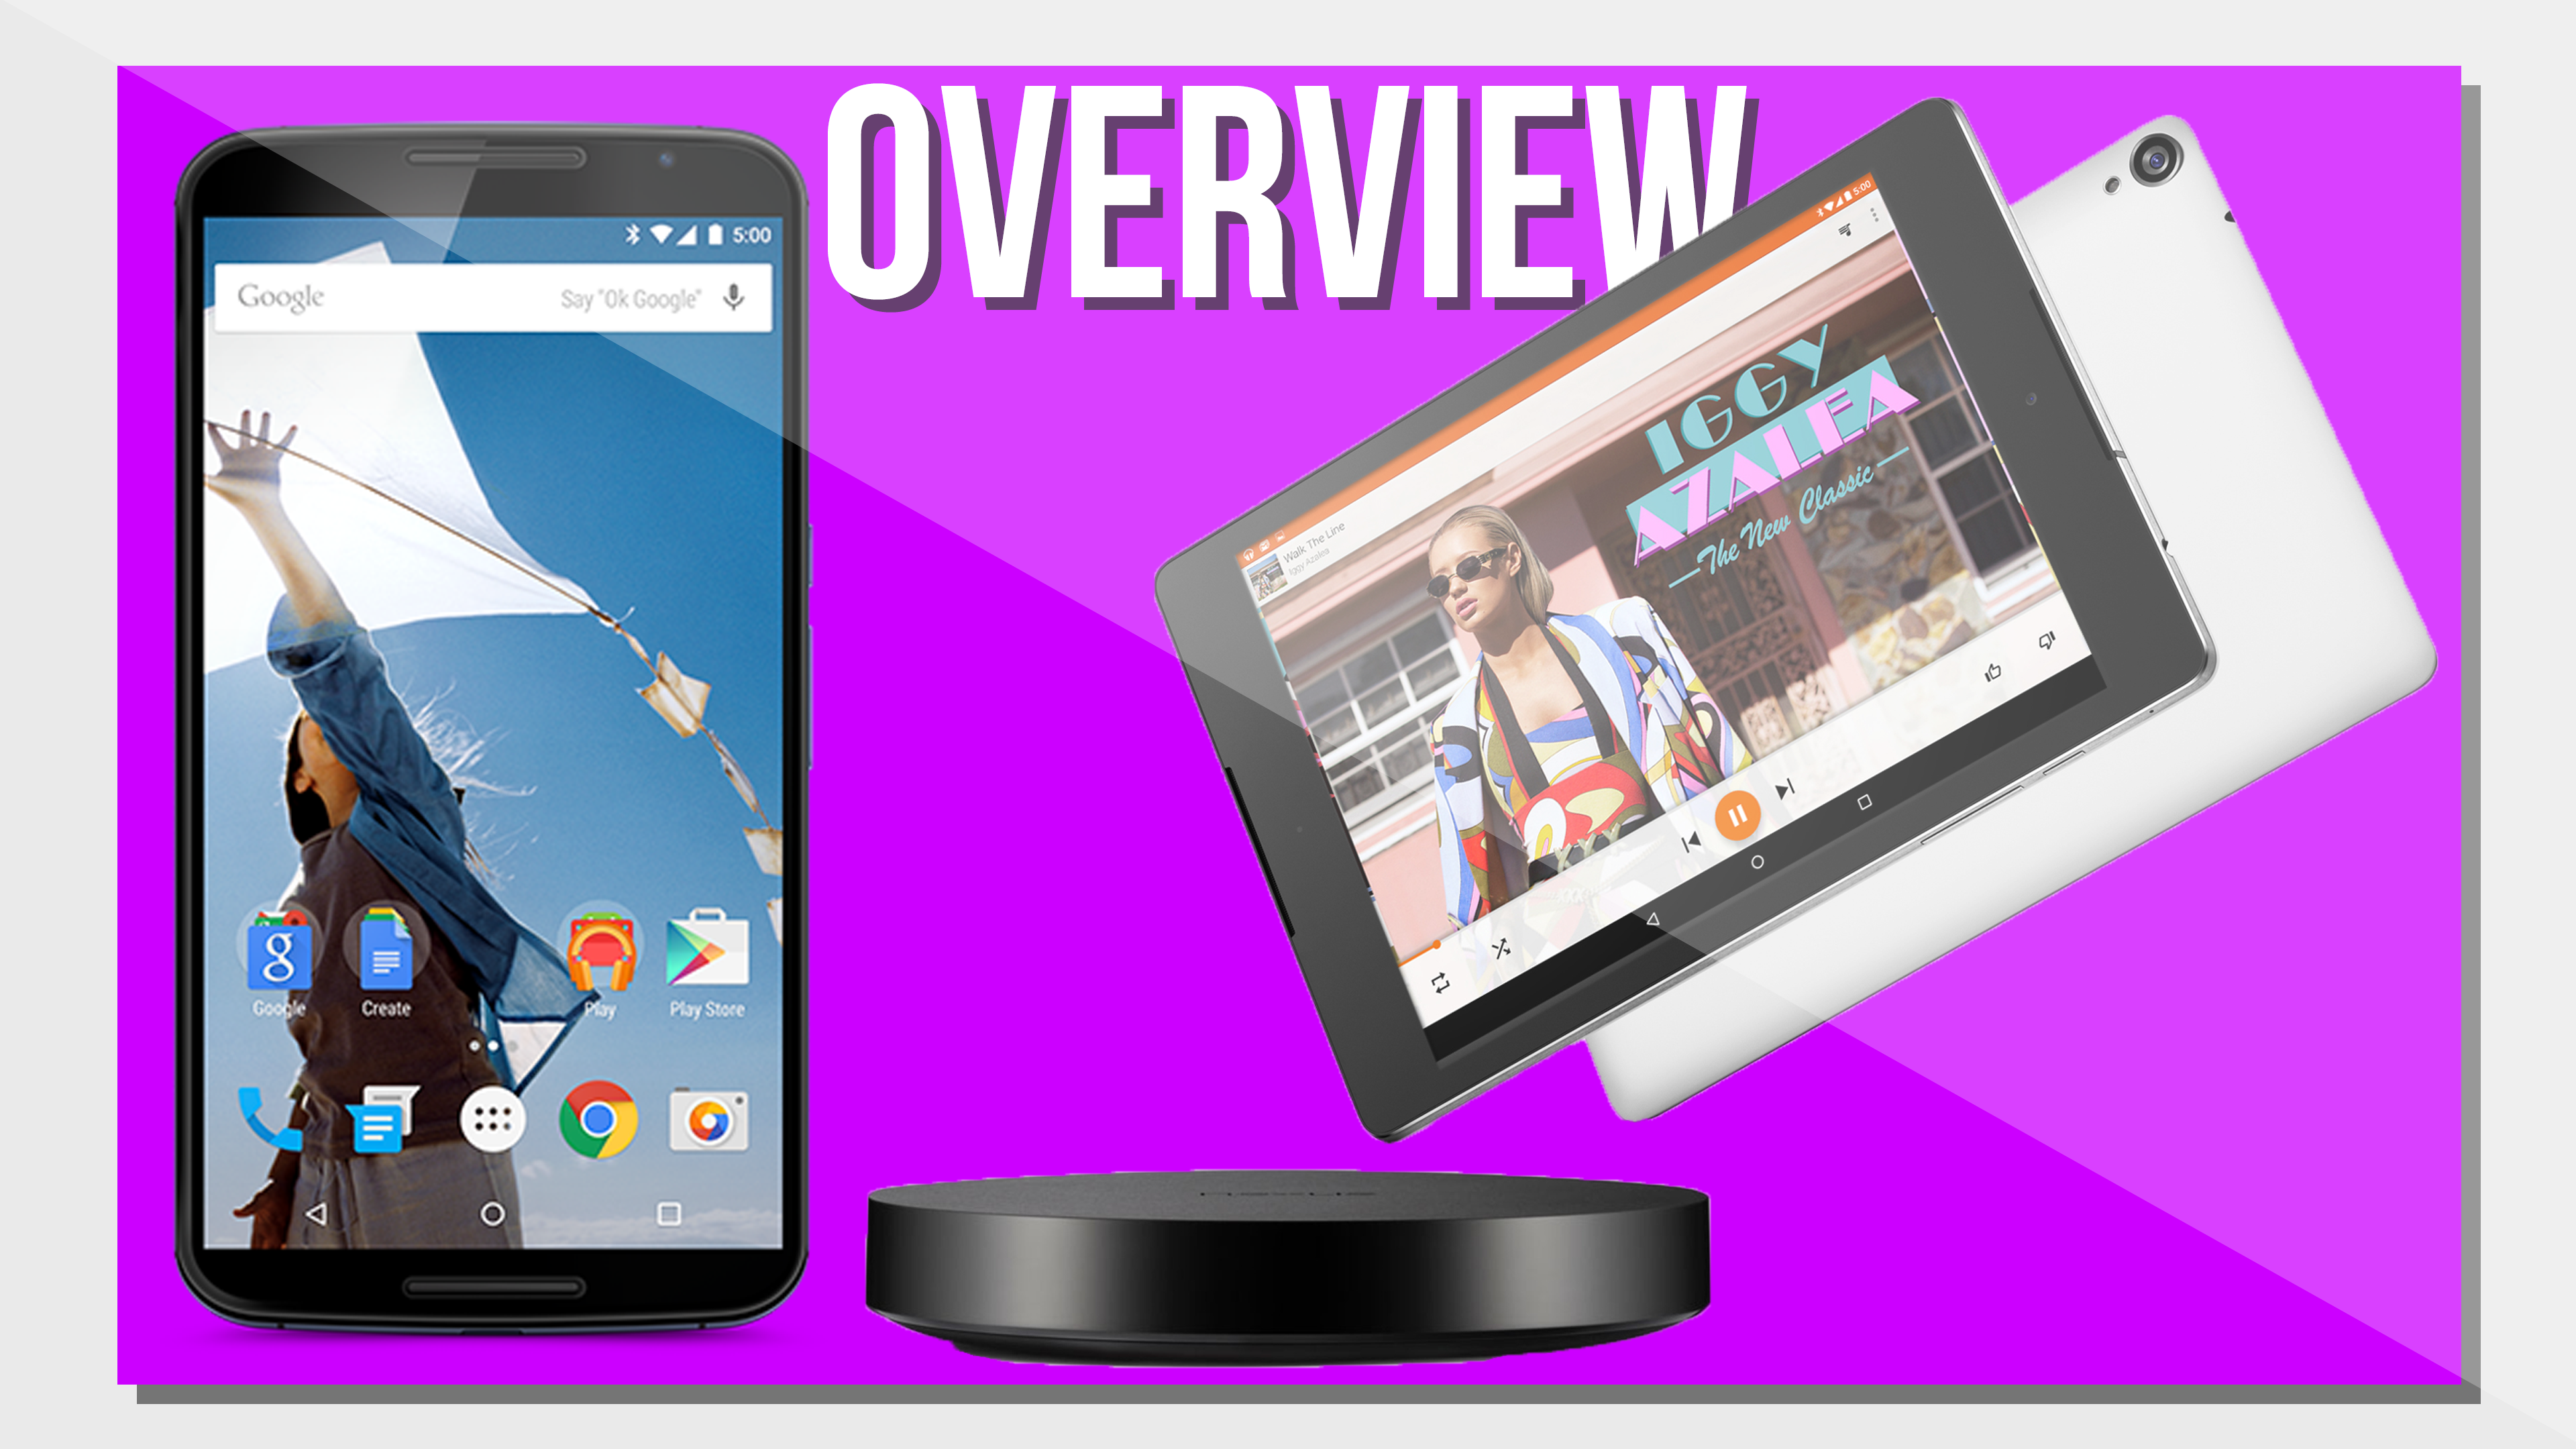 Nexus 6, Nexus 9, Nexus Player – Overview